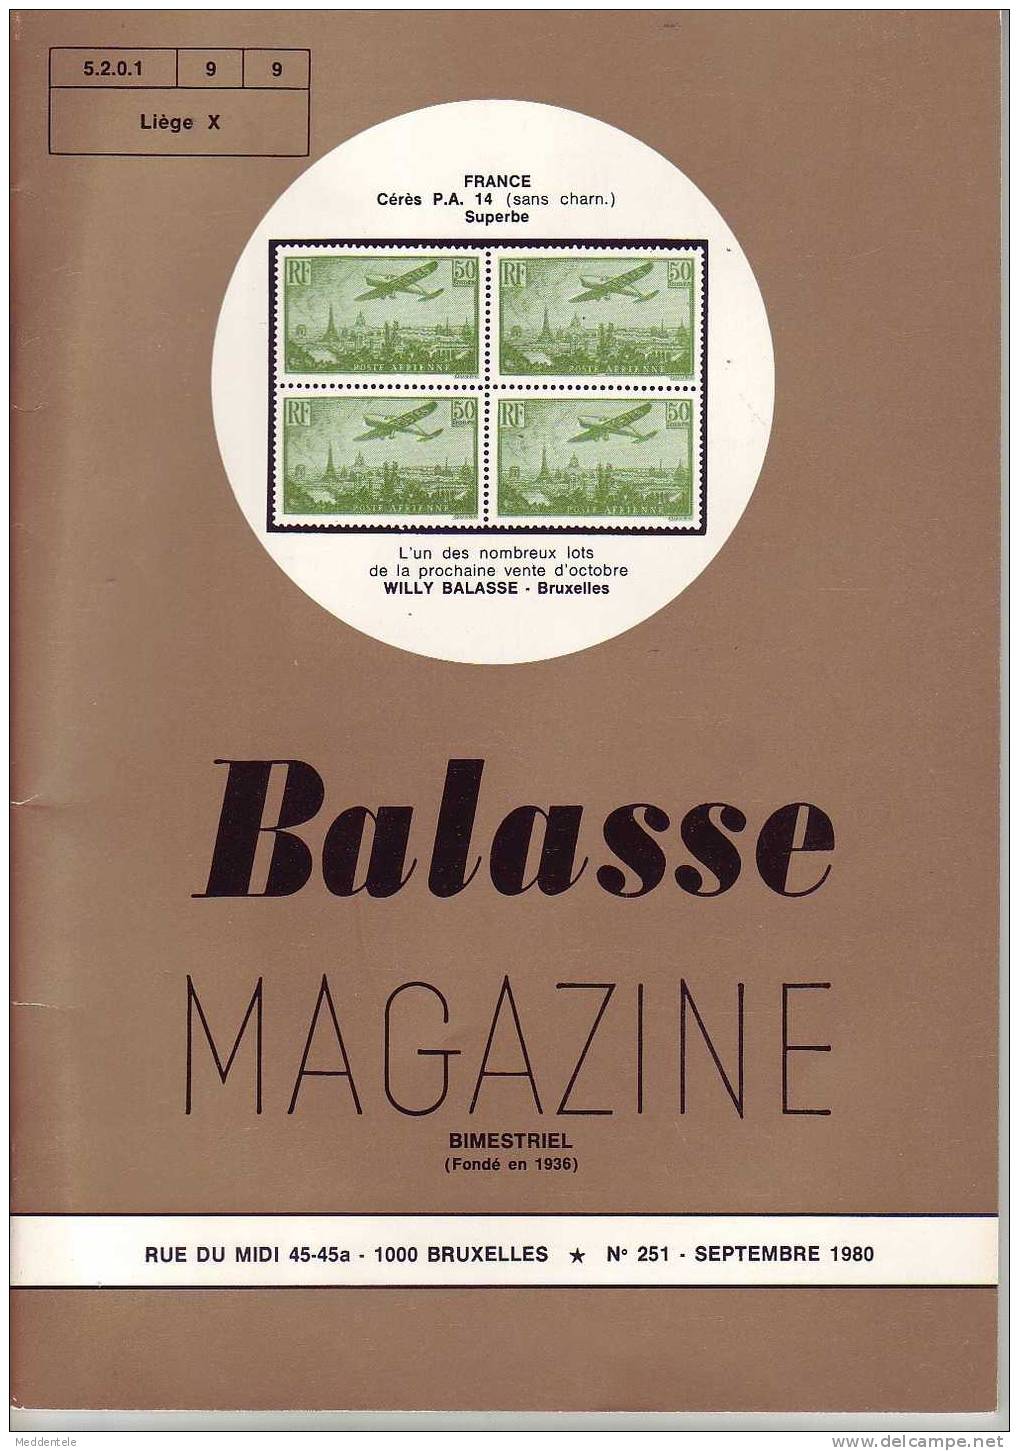 BALASSE MAGAZINE N° 251 - Français (àpd. 1941)